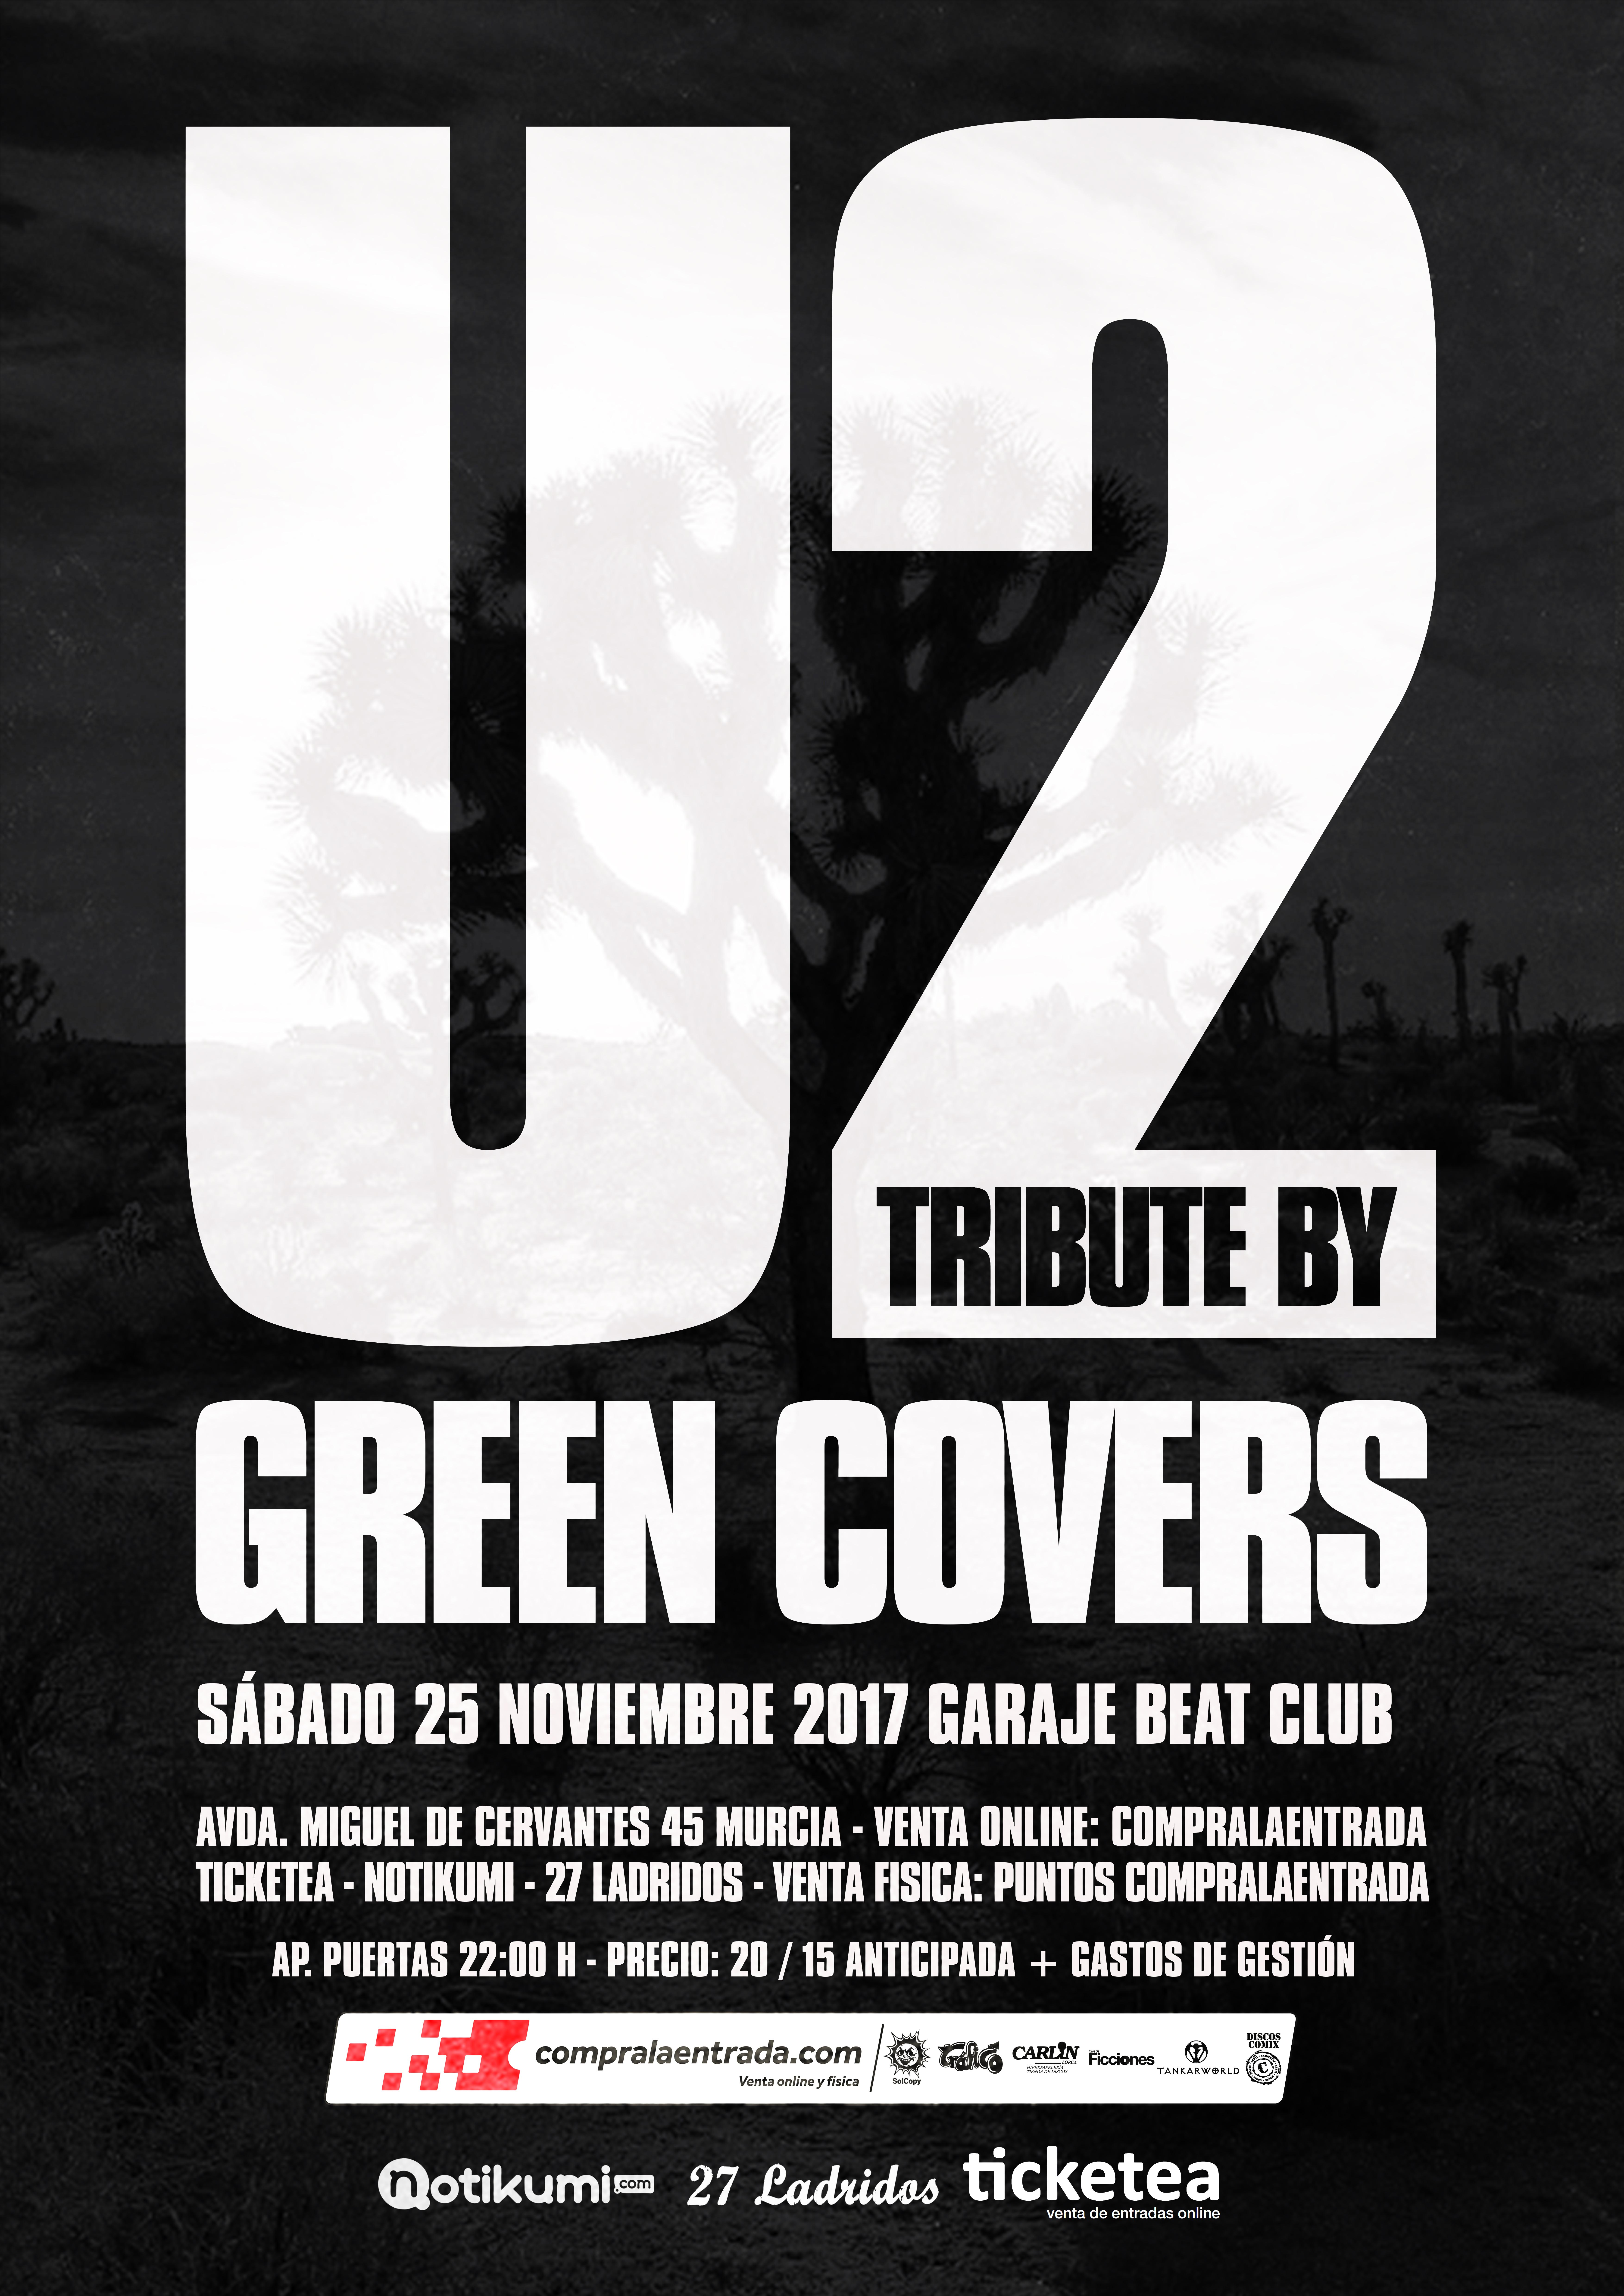 u2-tribute-green-covers-murcia